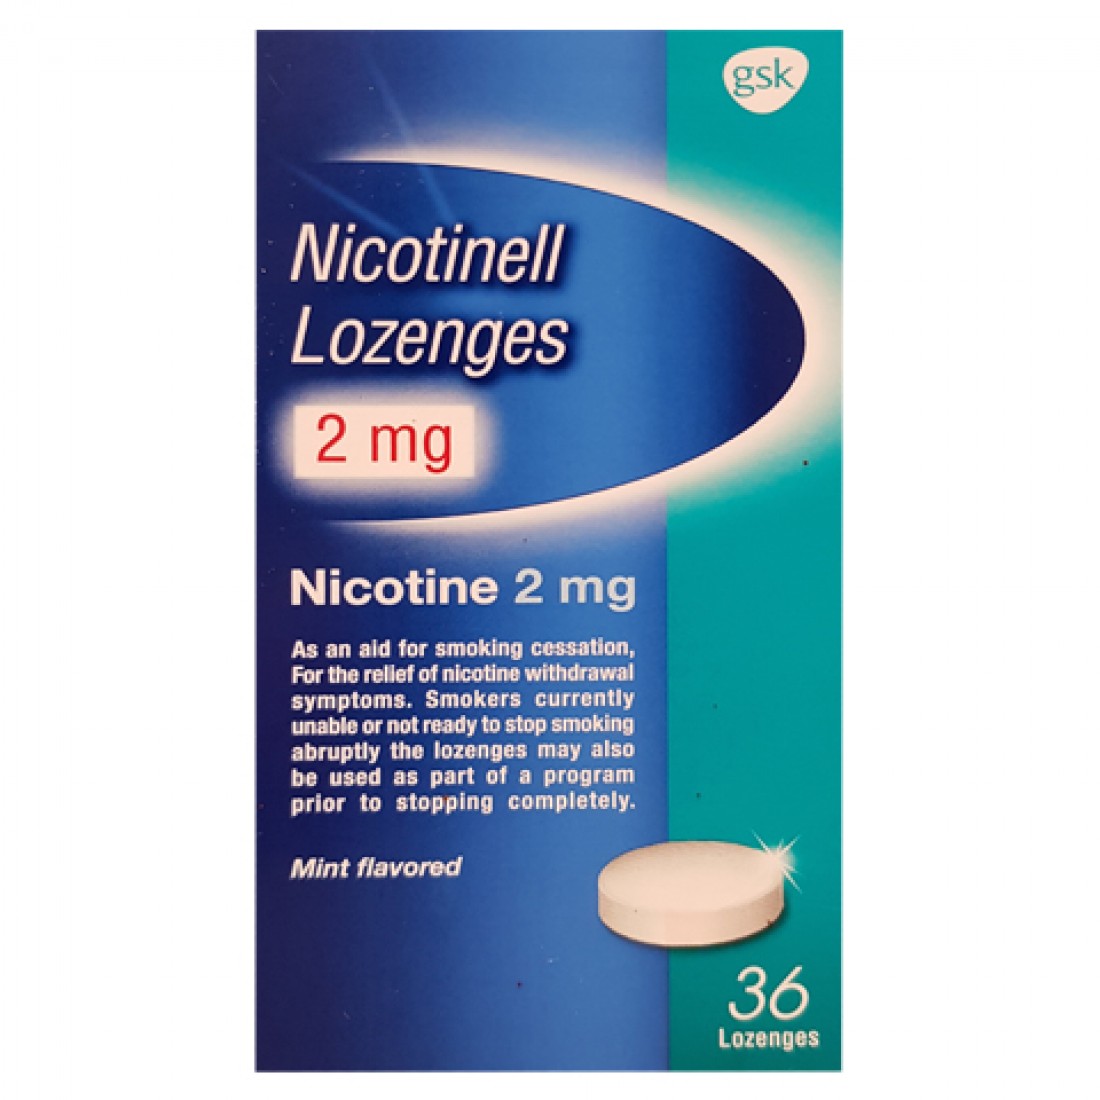 Никотинелл пастилки 2 мг / Nicotinell lozenges 2 mg - GSK